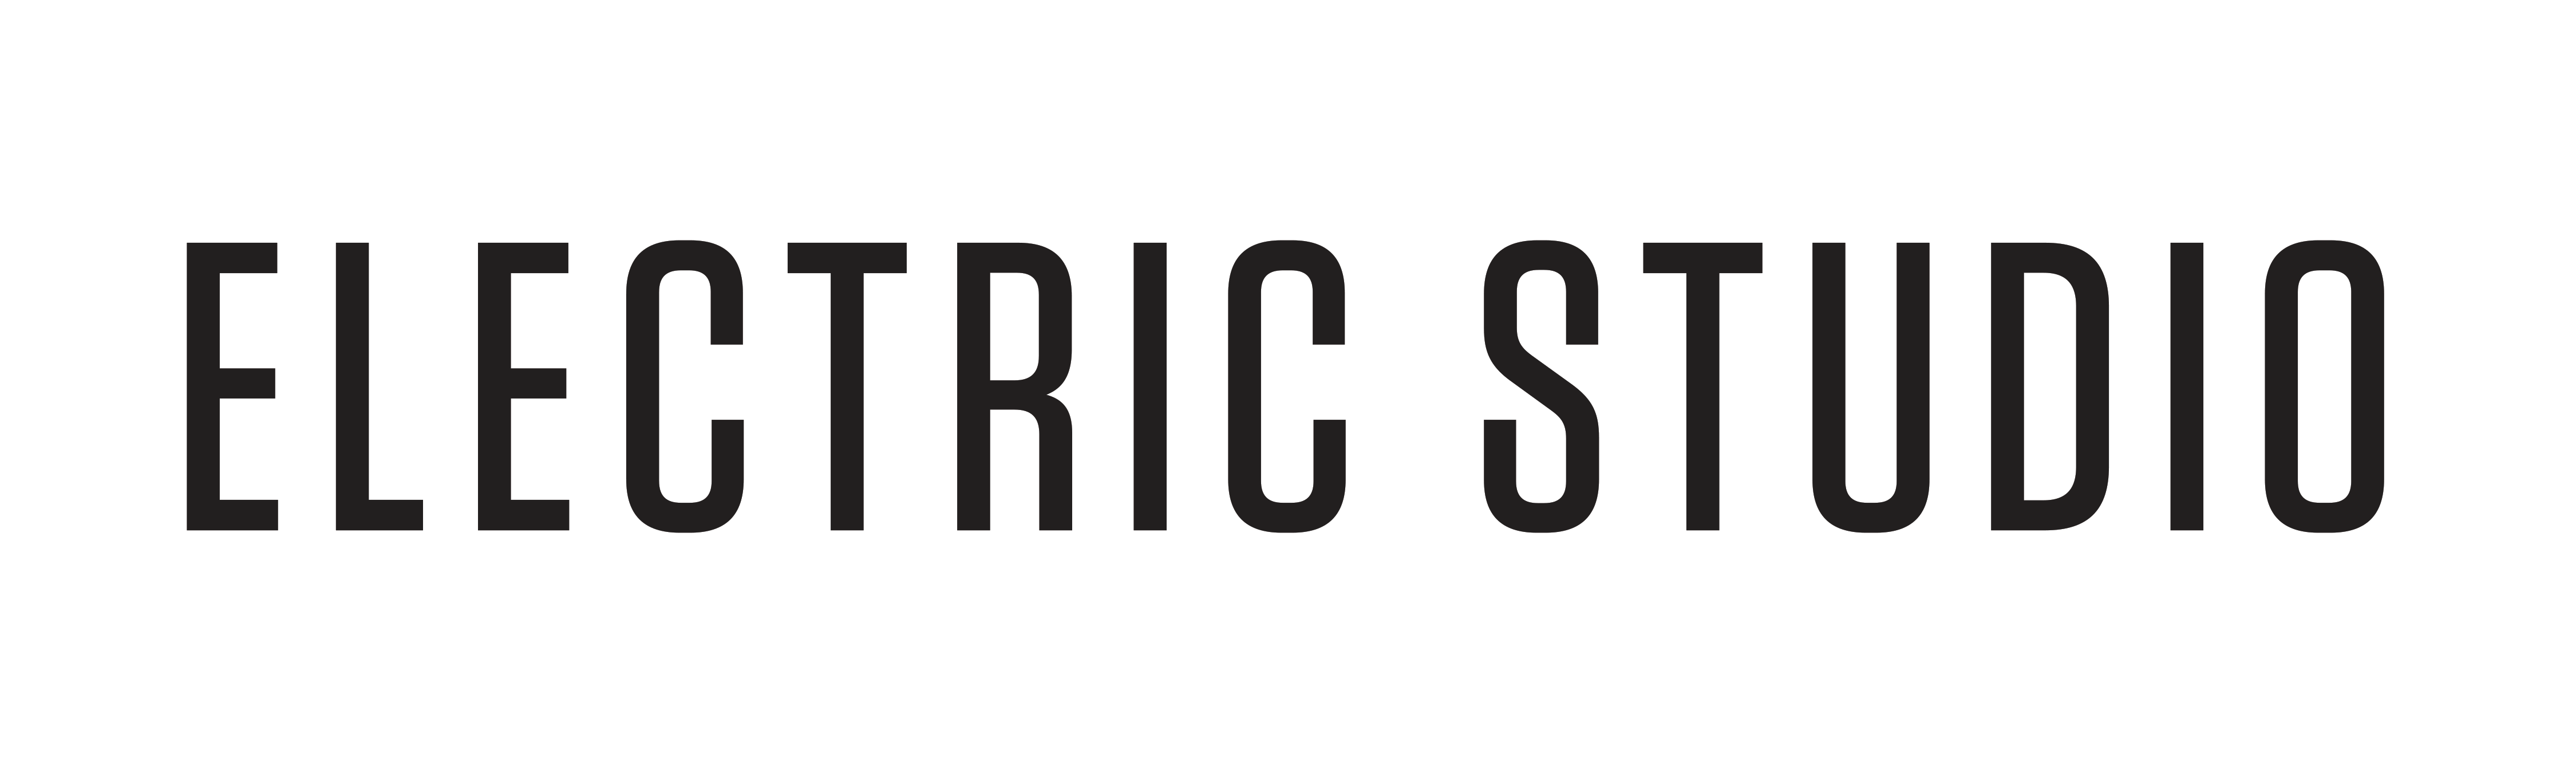 Electric Studio logo